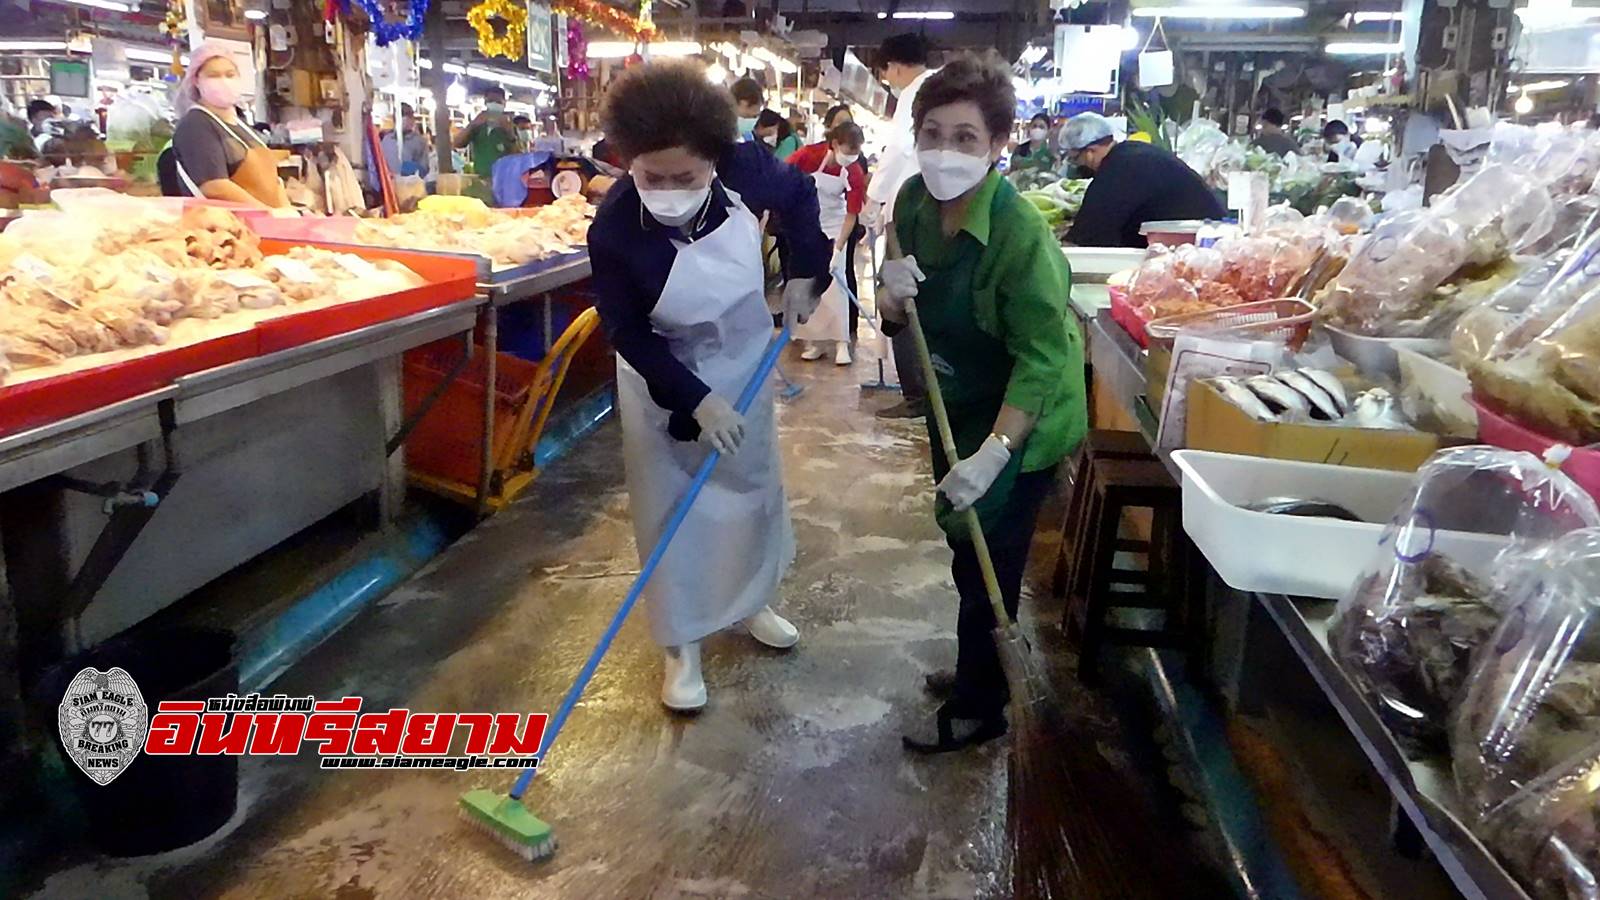 ราชบุรี-ตลาดศรีเมือง ร่วมใจล้างตลาด ต้อนรับเทศกาลตรุษจีน